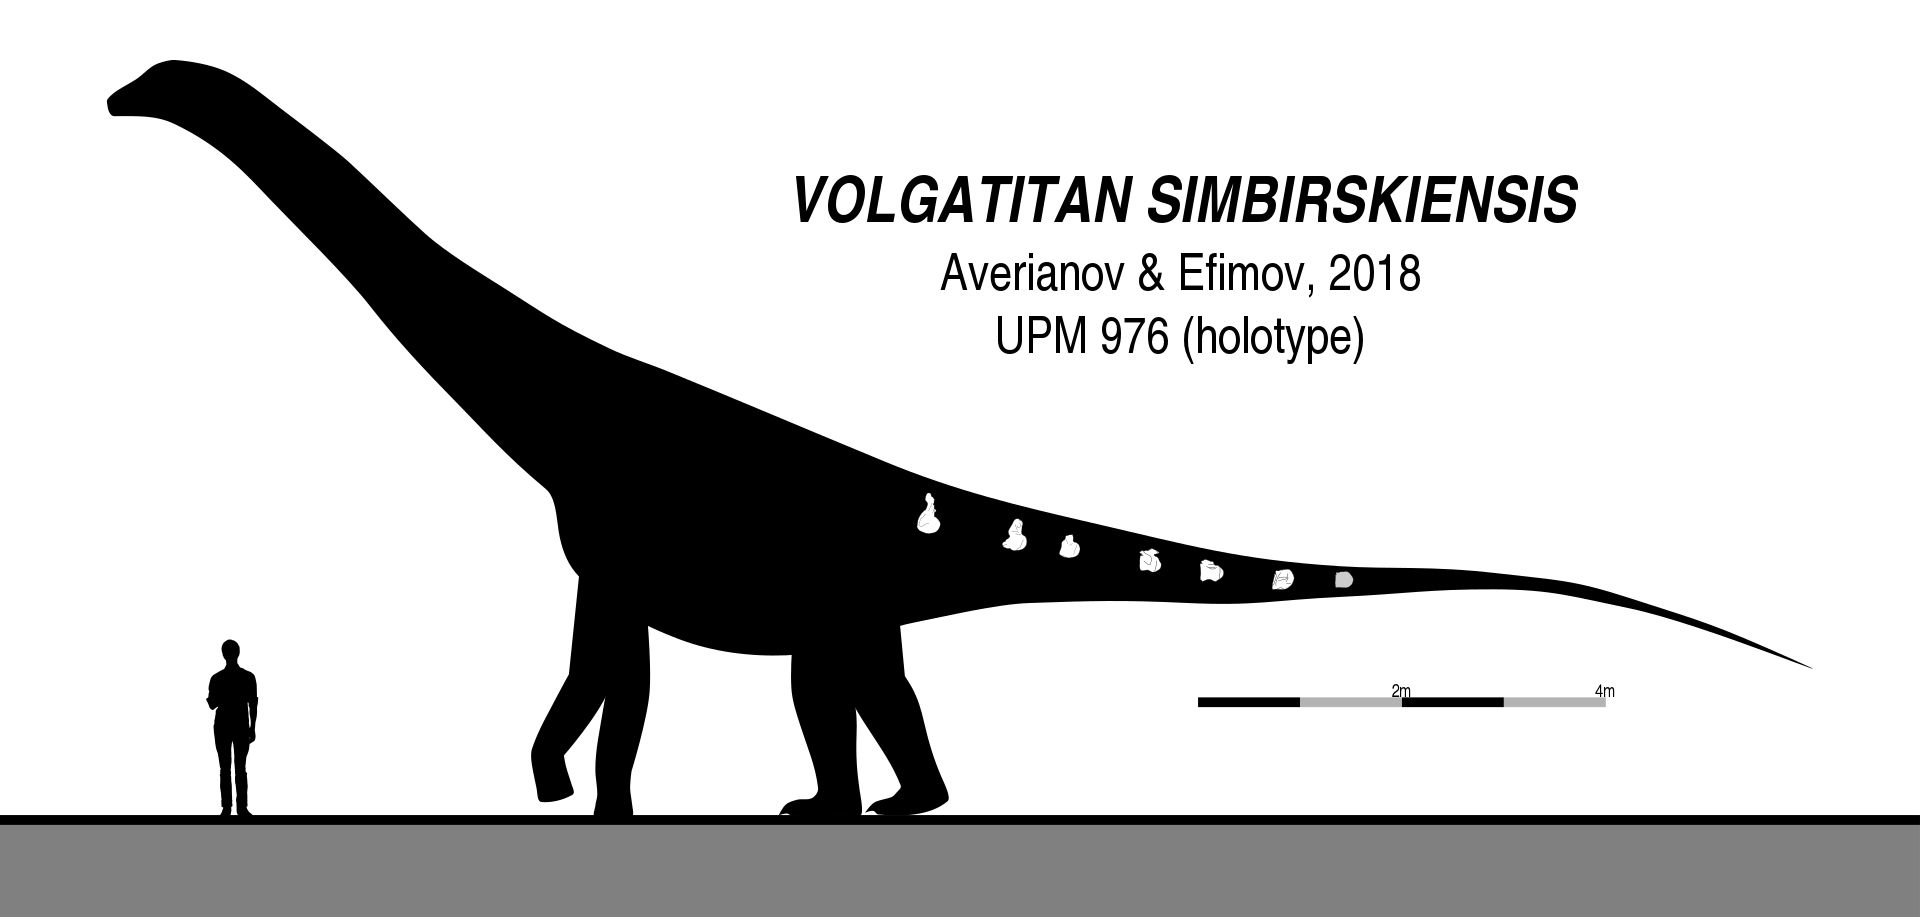 Silueta a zobrazení dochovaných fosilií u titanosaurního sauropoda druhu Volgatitan simbirskiensis. Tento středně velký sauropod obýval oblasti současné východní Evropy v období rané spodní křídy, asi před 130 až 133 miliony let. Při odhadované délce